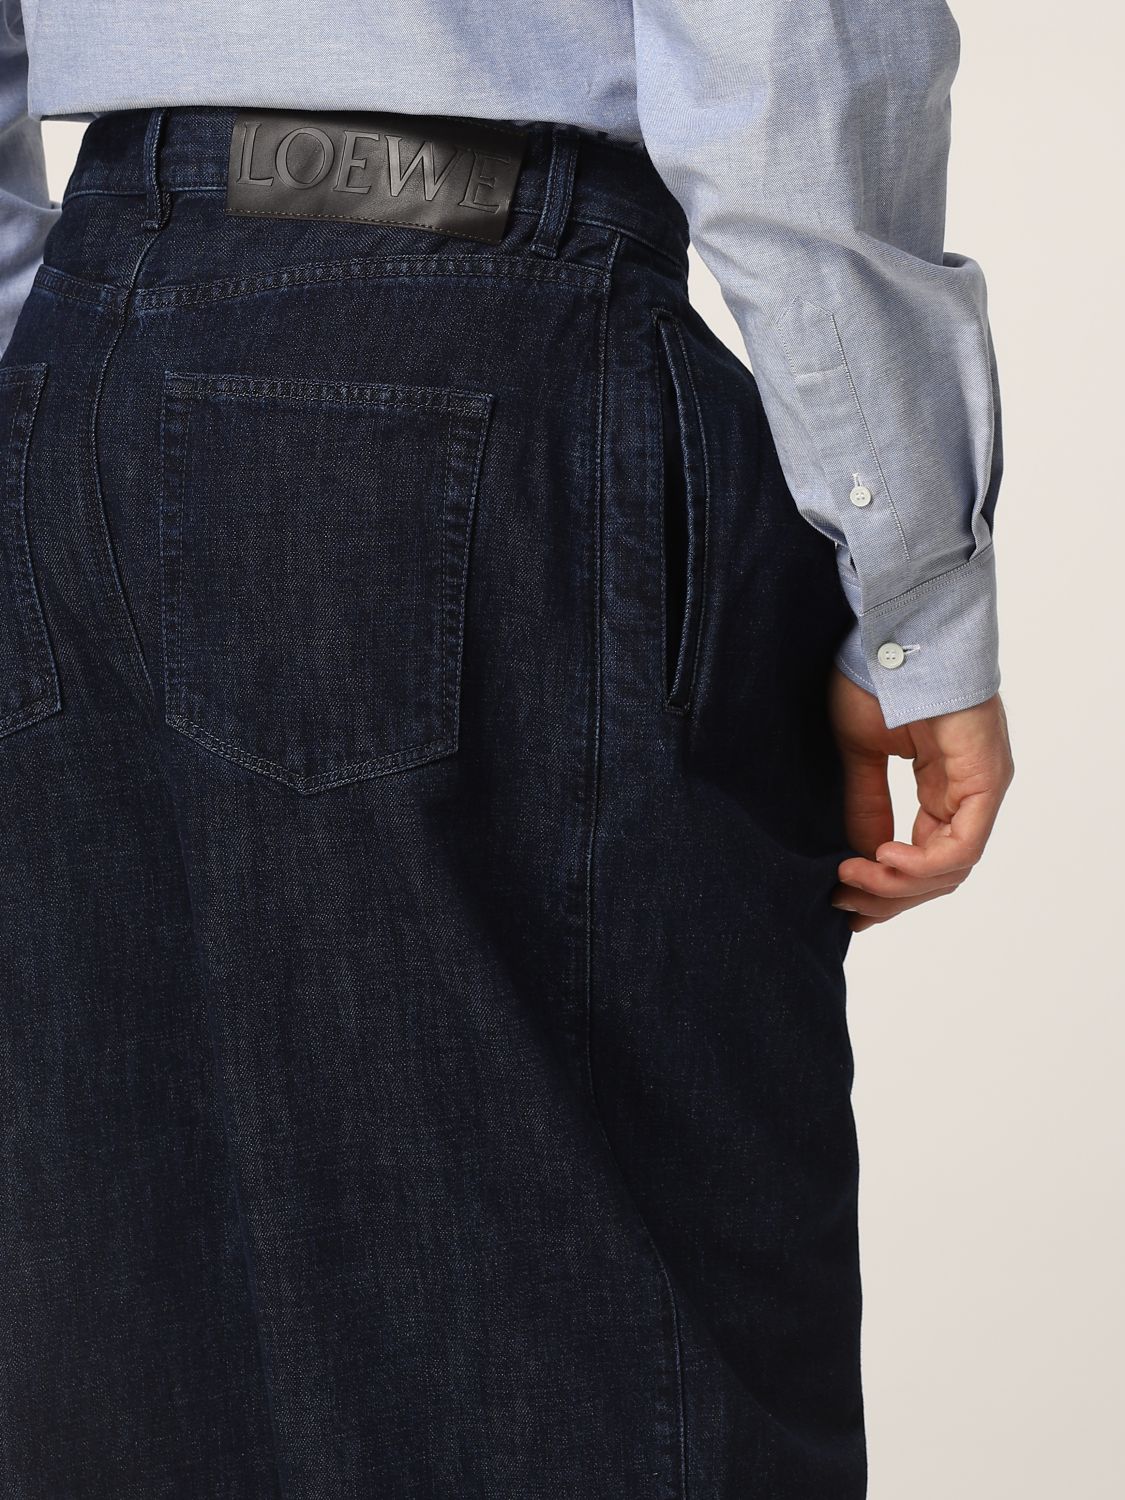 Giacca di jeans con logo posteriore Giglio.com Bambina Abbigliamento Cappotti e giubbotti Giacche Giacche di jeans 